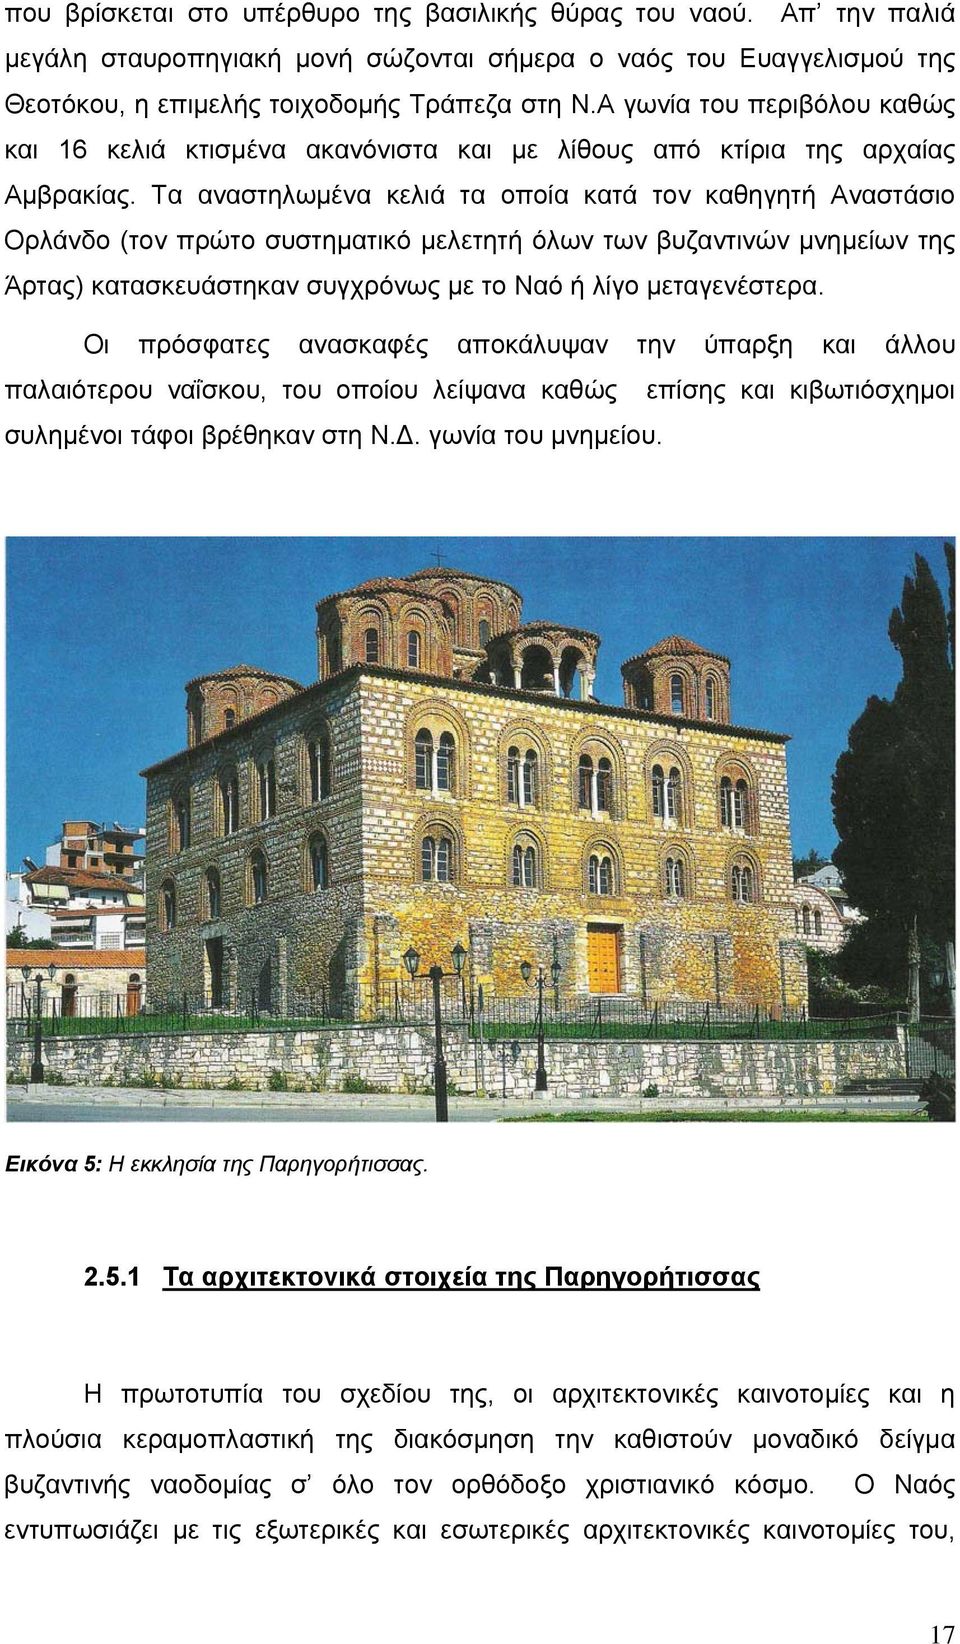 Τα αναστηλωμένα κελιά τα οποία κατά τον καθηγητή Αναστάσιο Ορλάνδο (τον πρώτο συστηματικό μελετητή όλων των βυζαντινών μνημείων της Άρτας) κατασκευάστηκαν συγχρόνως με το Ναό ή λίγο μεταγενέστερα.